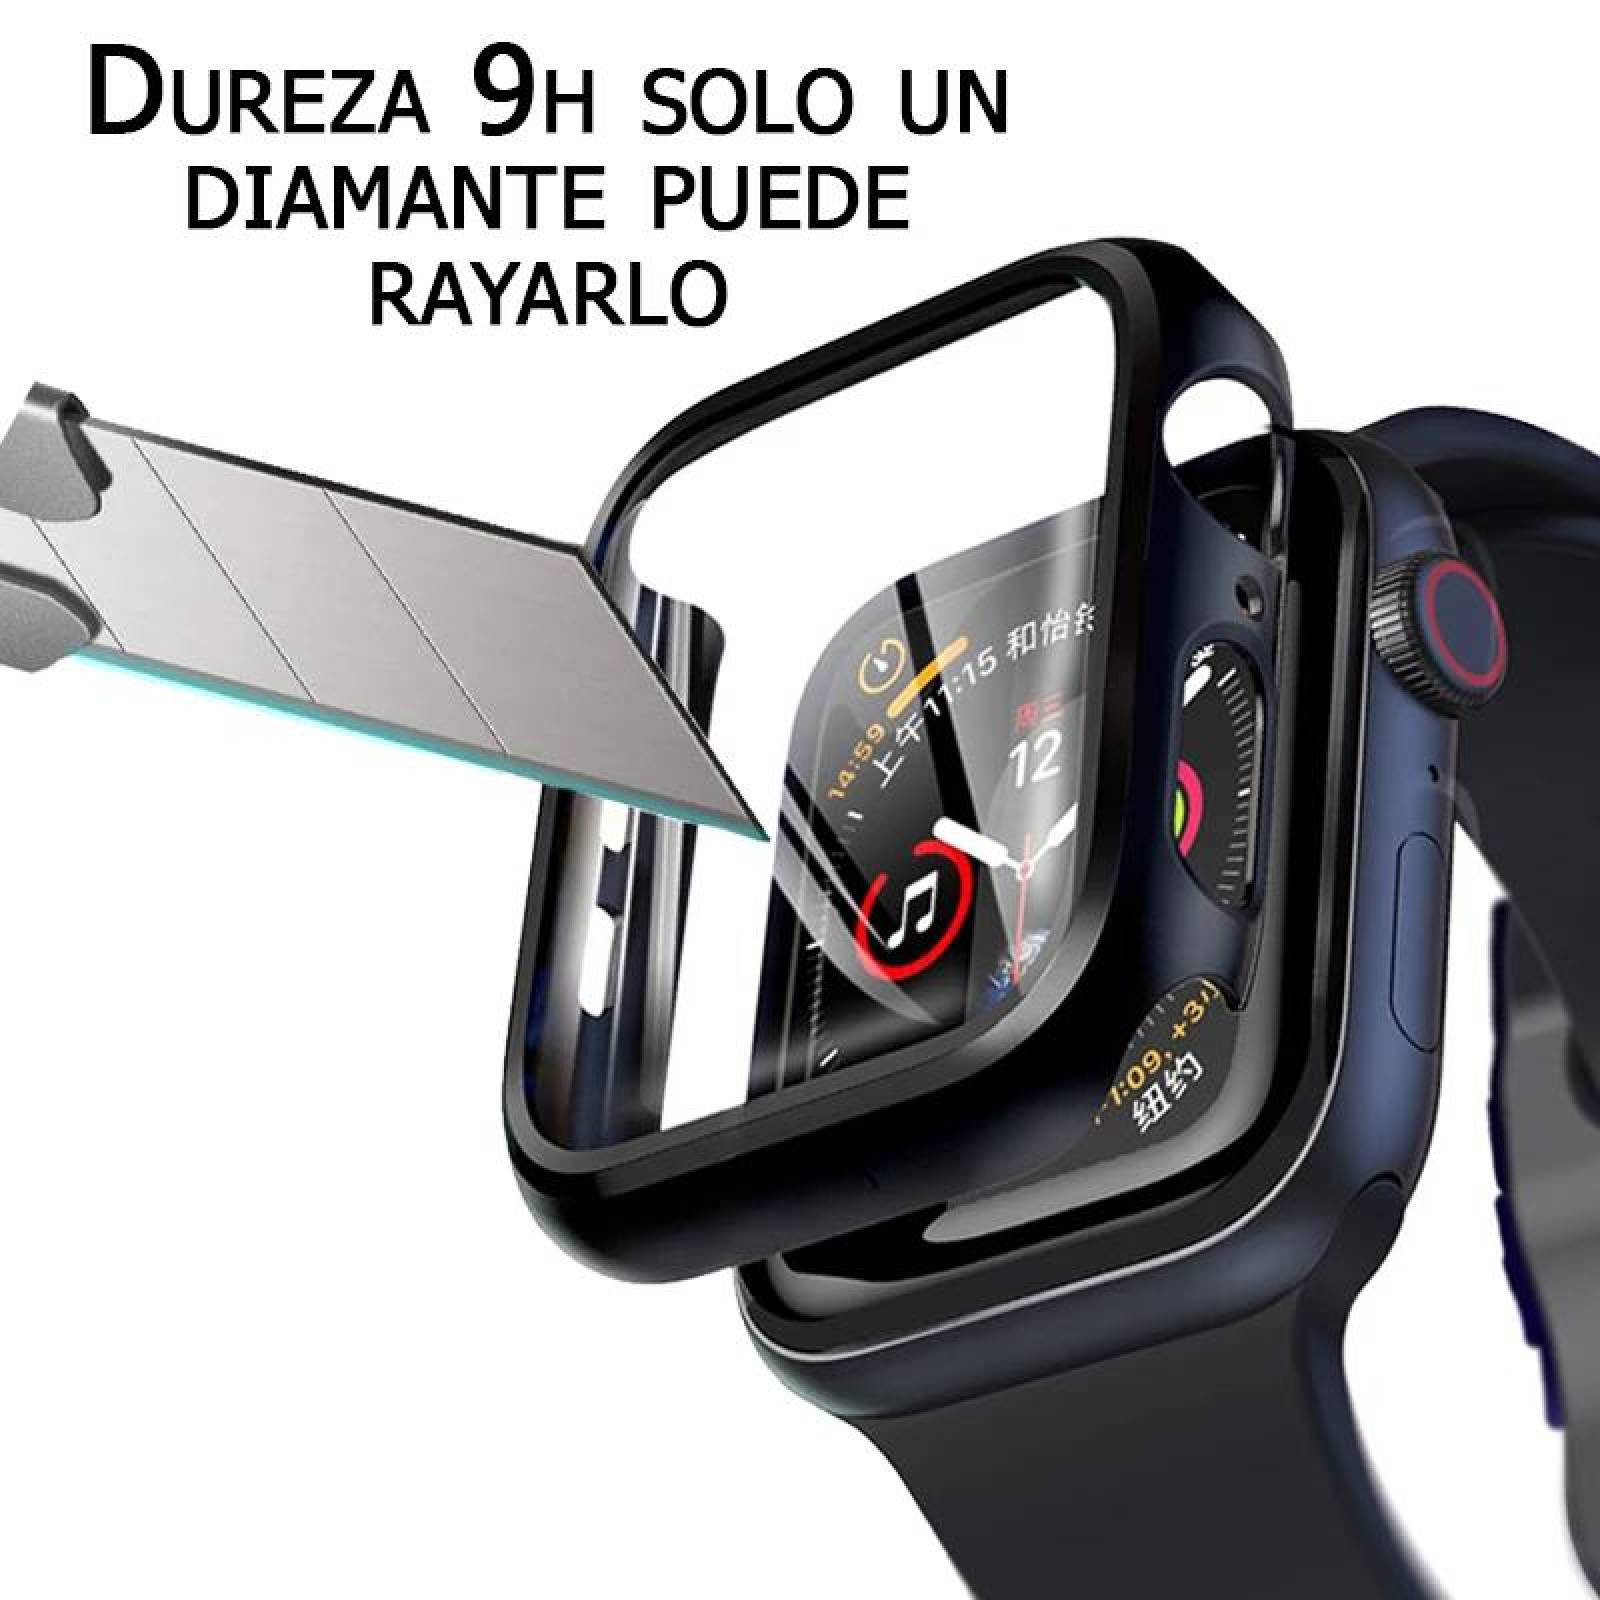 Funda con cristal templado para Apple Watch 38MM PLATA